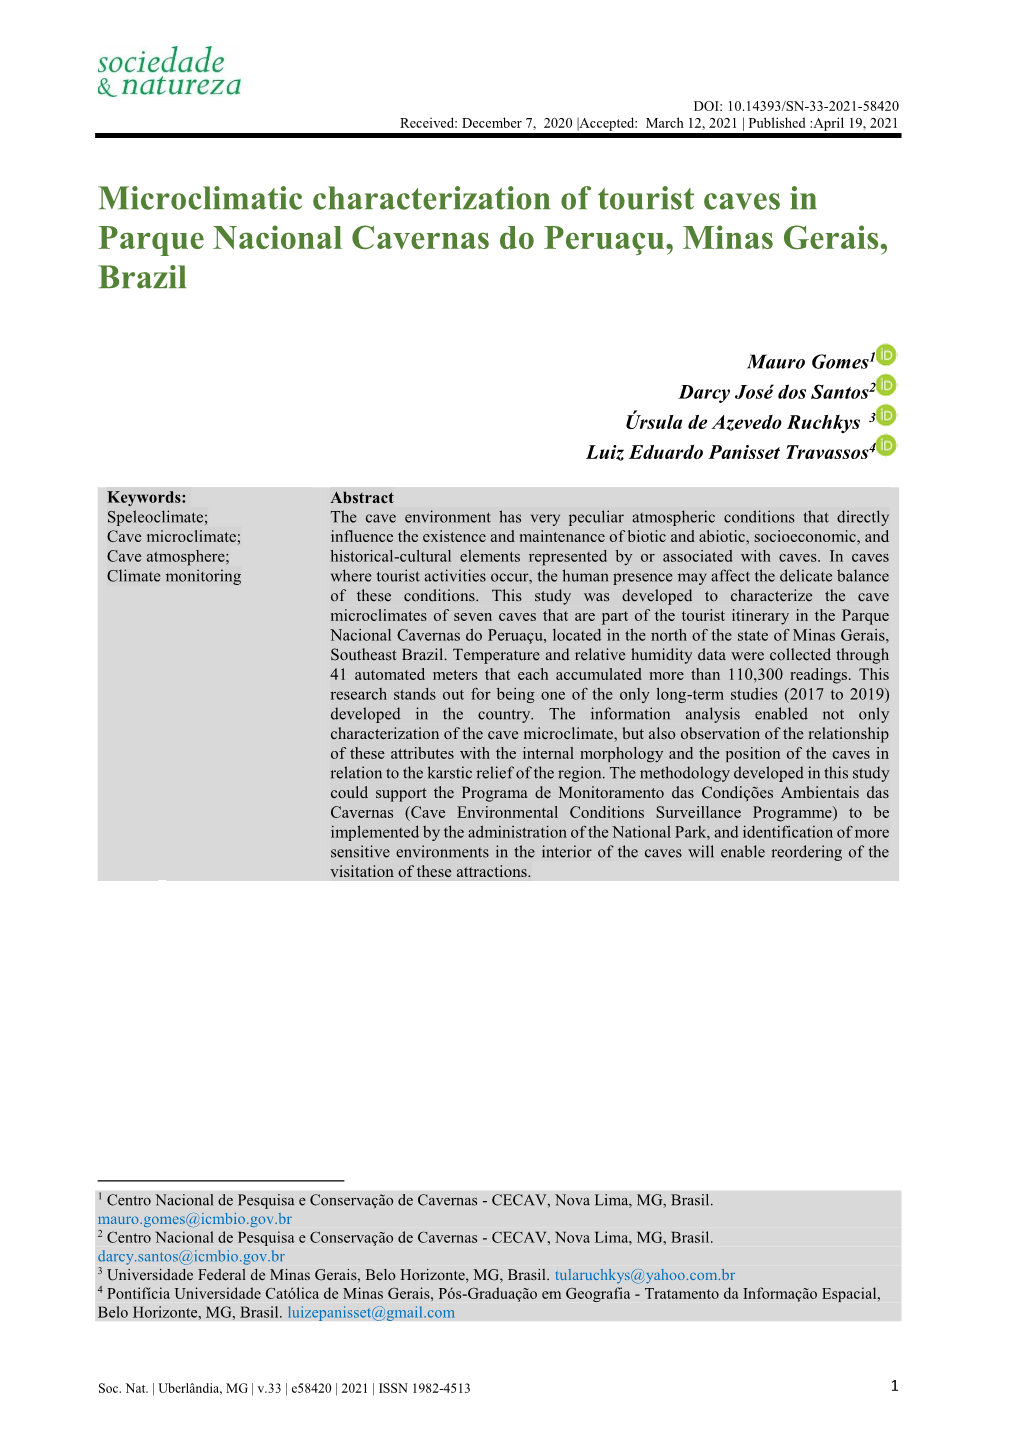 Microclimatic Characterization of Tourist Caves in Parque Nacional Cavernas Do Peruaçu, Minas Gerais, Brazil